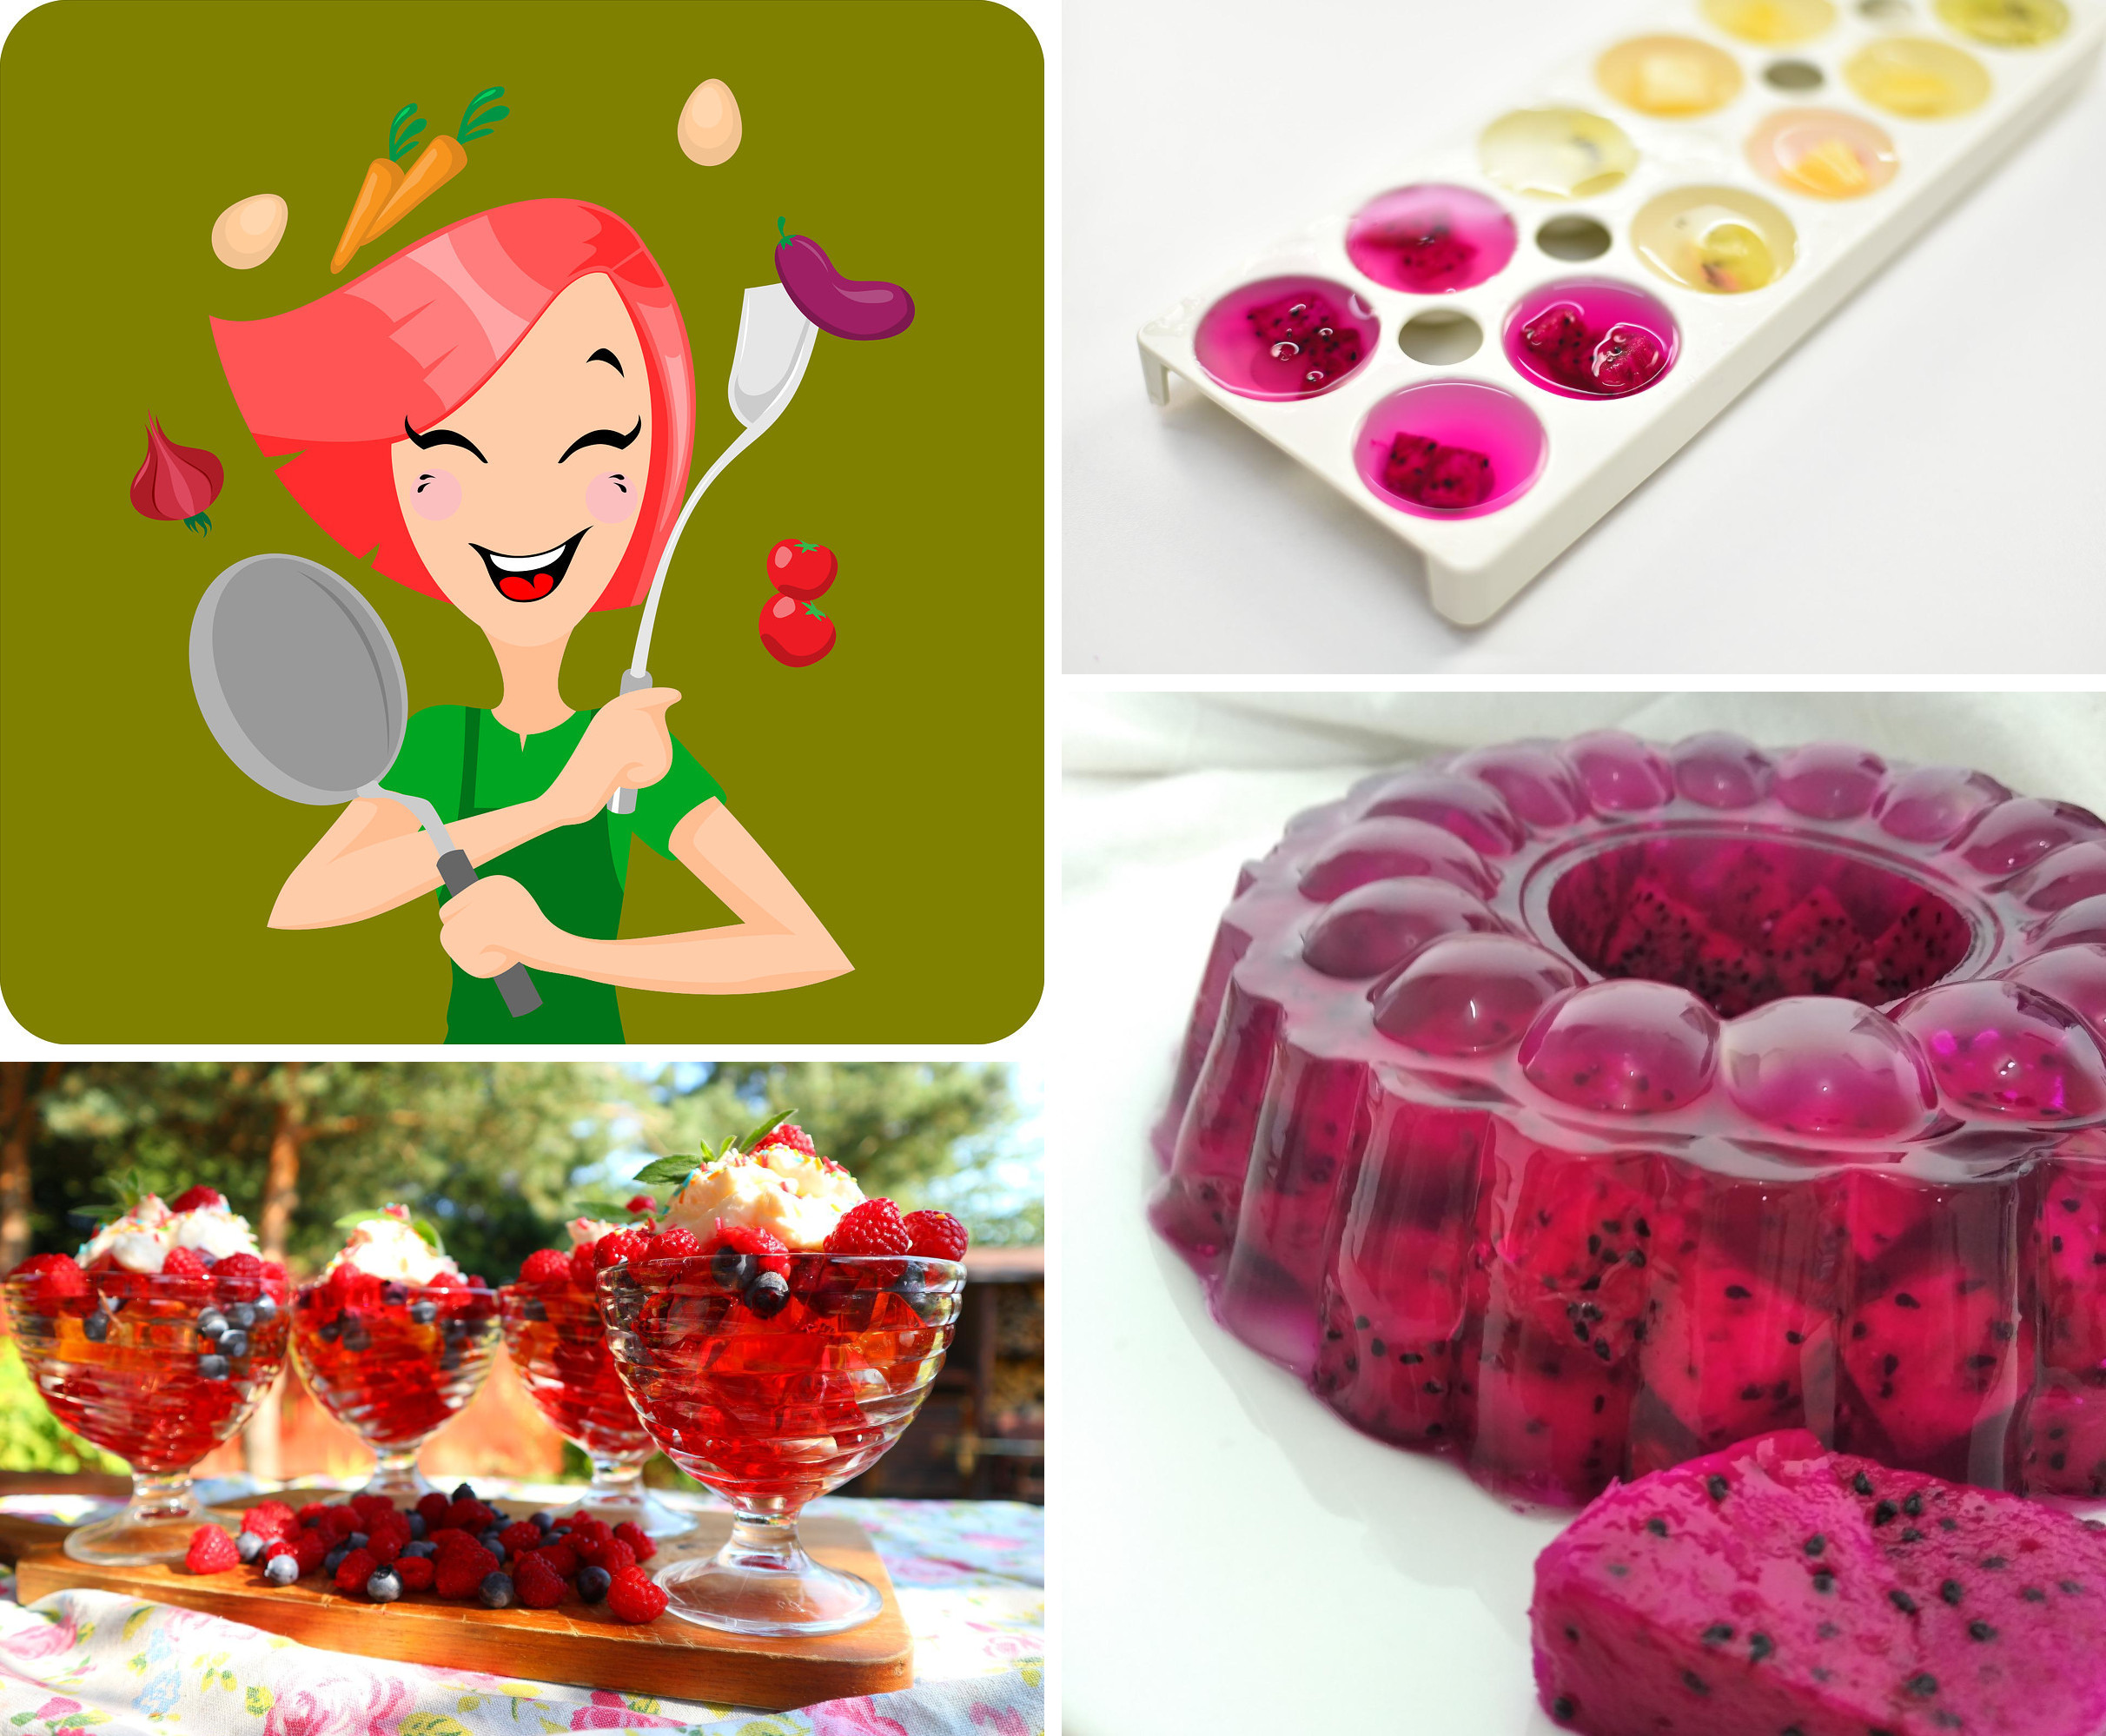 Koláž z obrázků k akci Vaříme zdravě, chutně, levně k tématu agar (zdroj: www.pixabay.com)